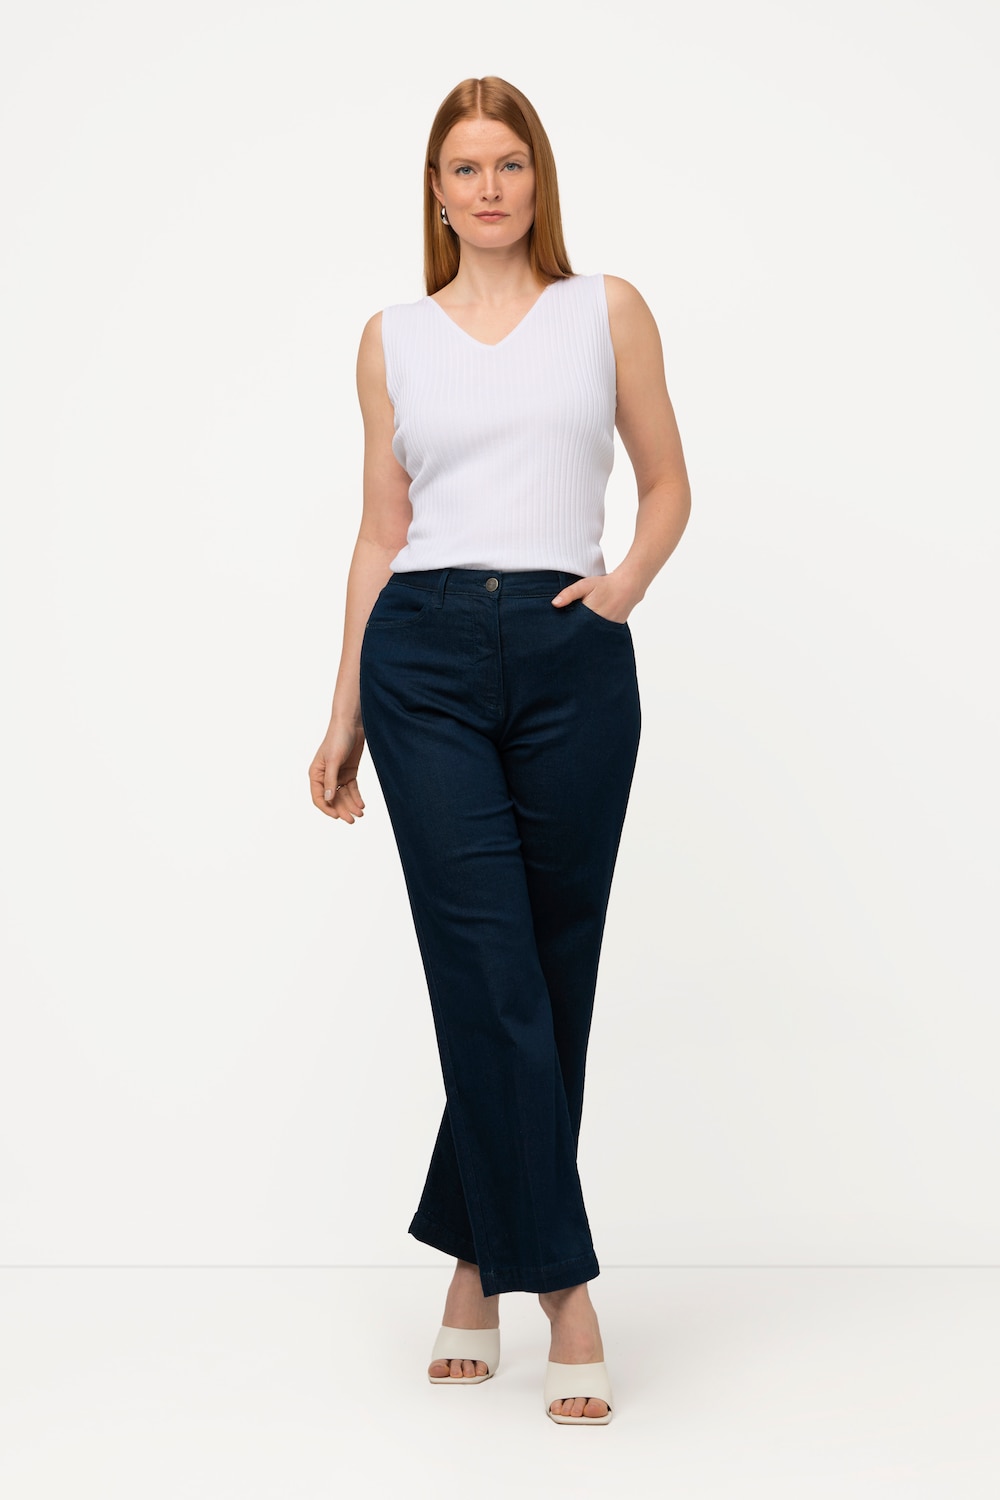 Grote Maten jeans, Dames, blauw, Maat: 27, Katoen/Synthetische vezels, Ulla Popken